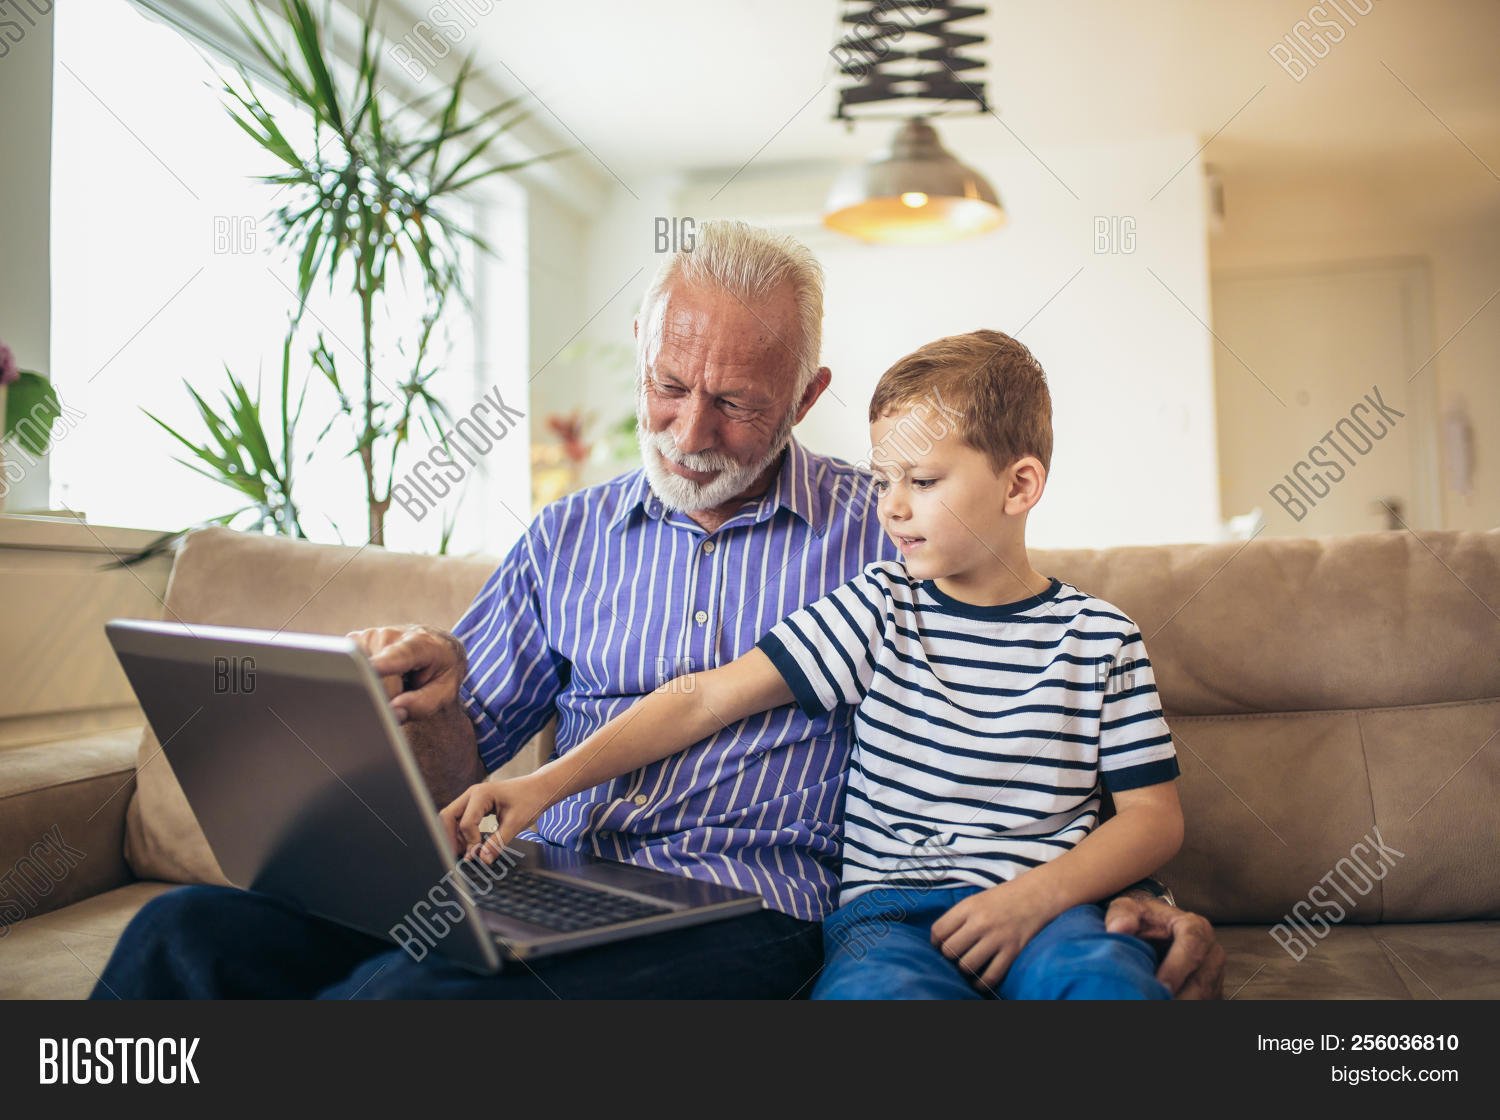 Дед хочет внука. Дедушка и внук. Дедушка и ребенок за компьютером. Дедушка и внук за компьютером. За компом с дедом с внуком.